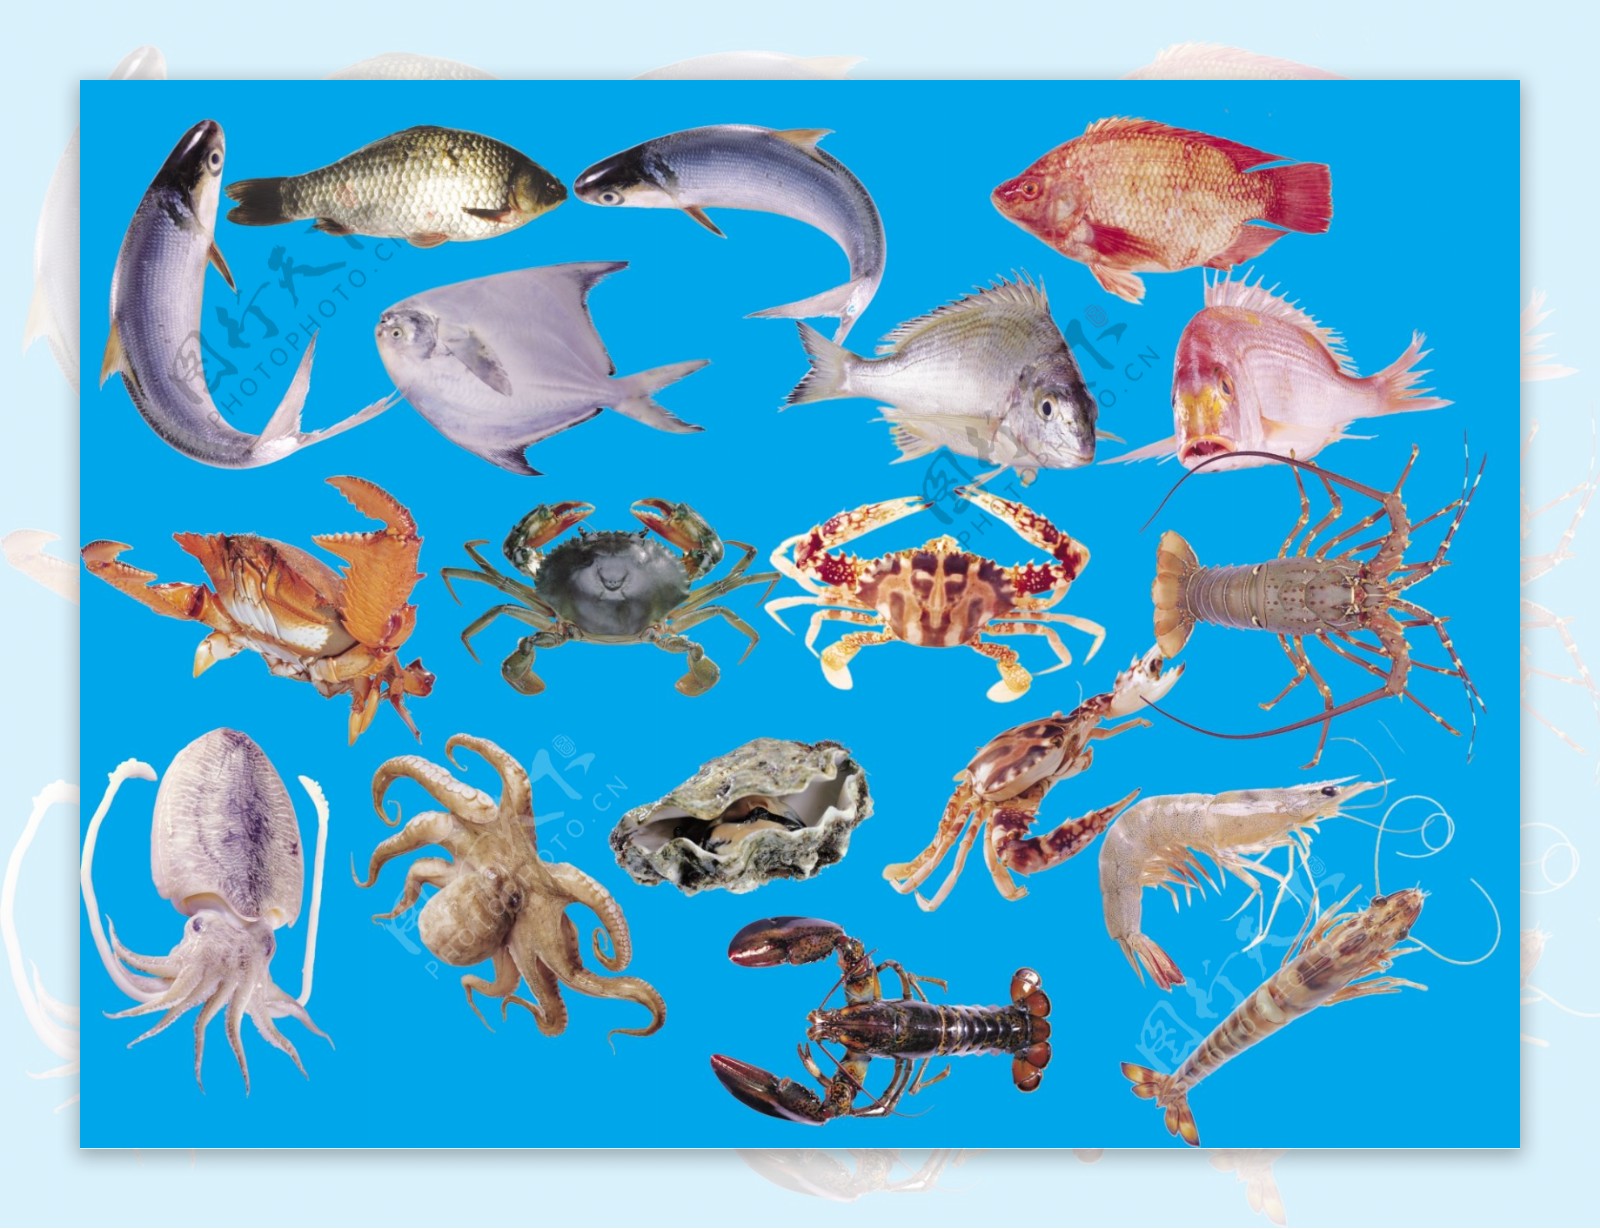 鱼类虾类螃蟹乌贼都是抠好的图片